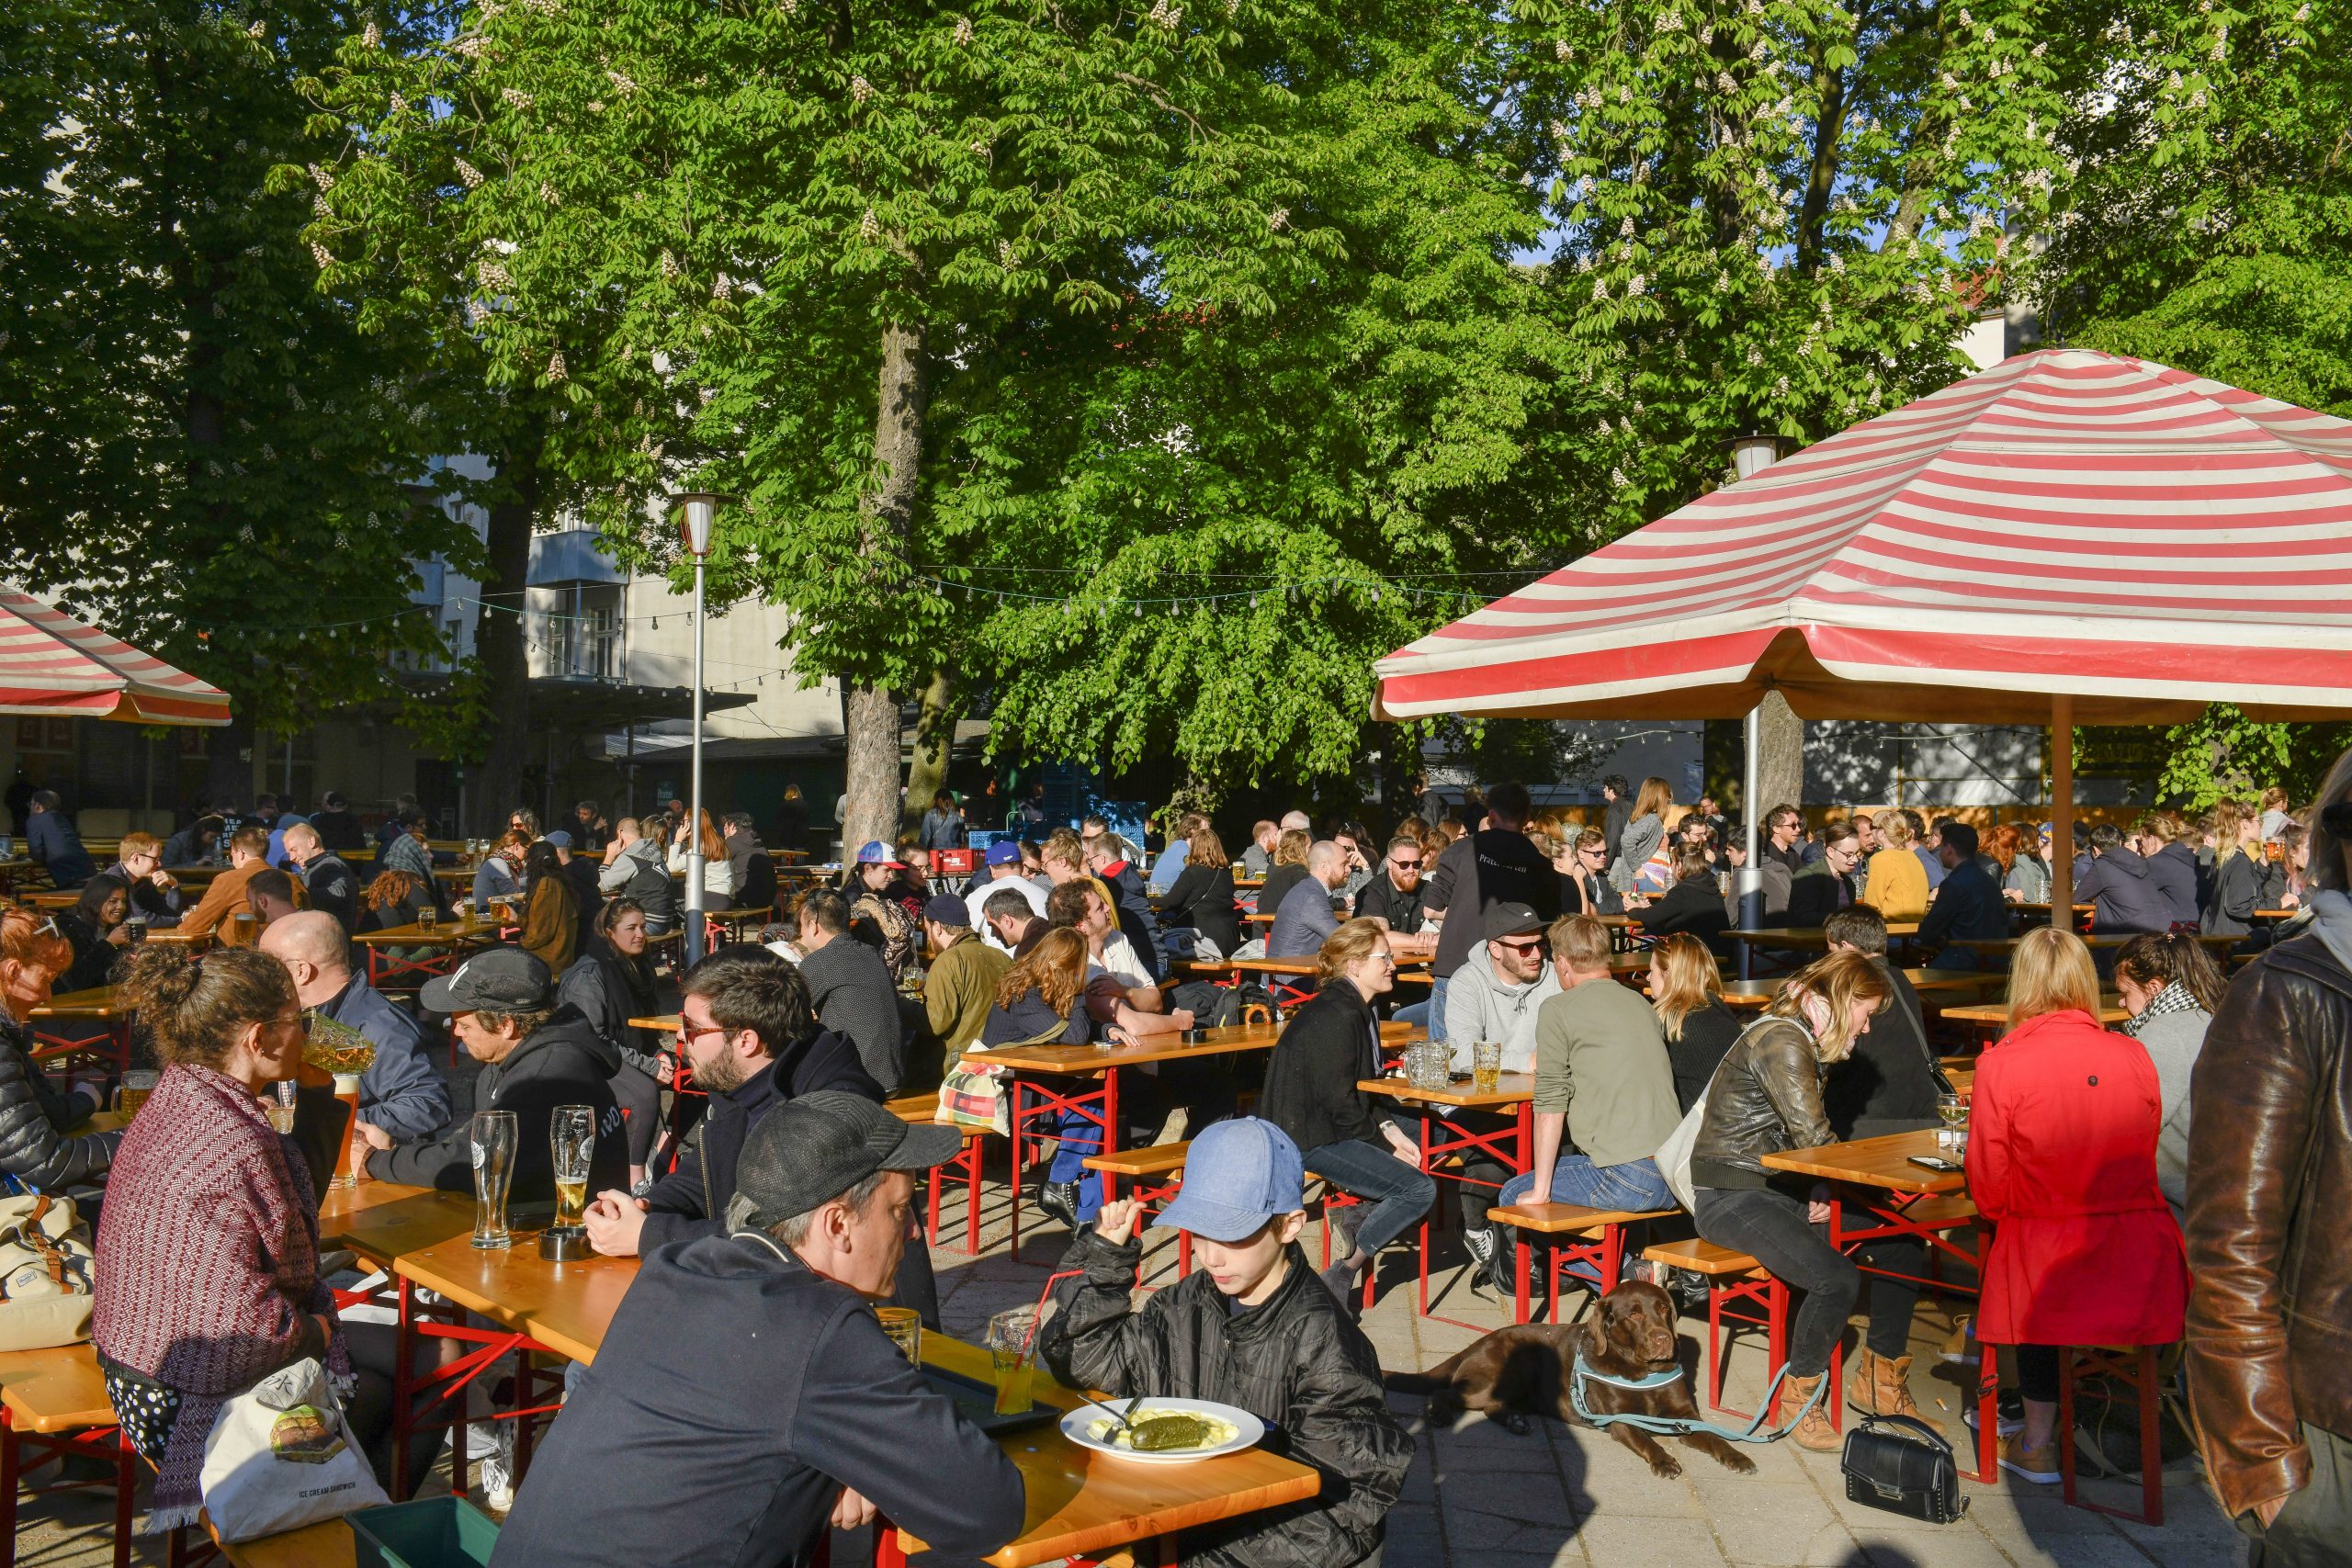 Biergärten in Berlin Im Prater Biergarten trinkt man bei schönem Wetter das süffige Prater Pils, das Essen kommt frisch vom Grill.